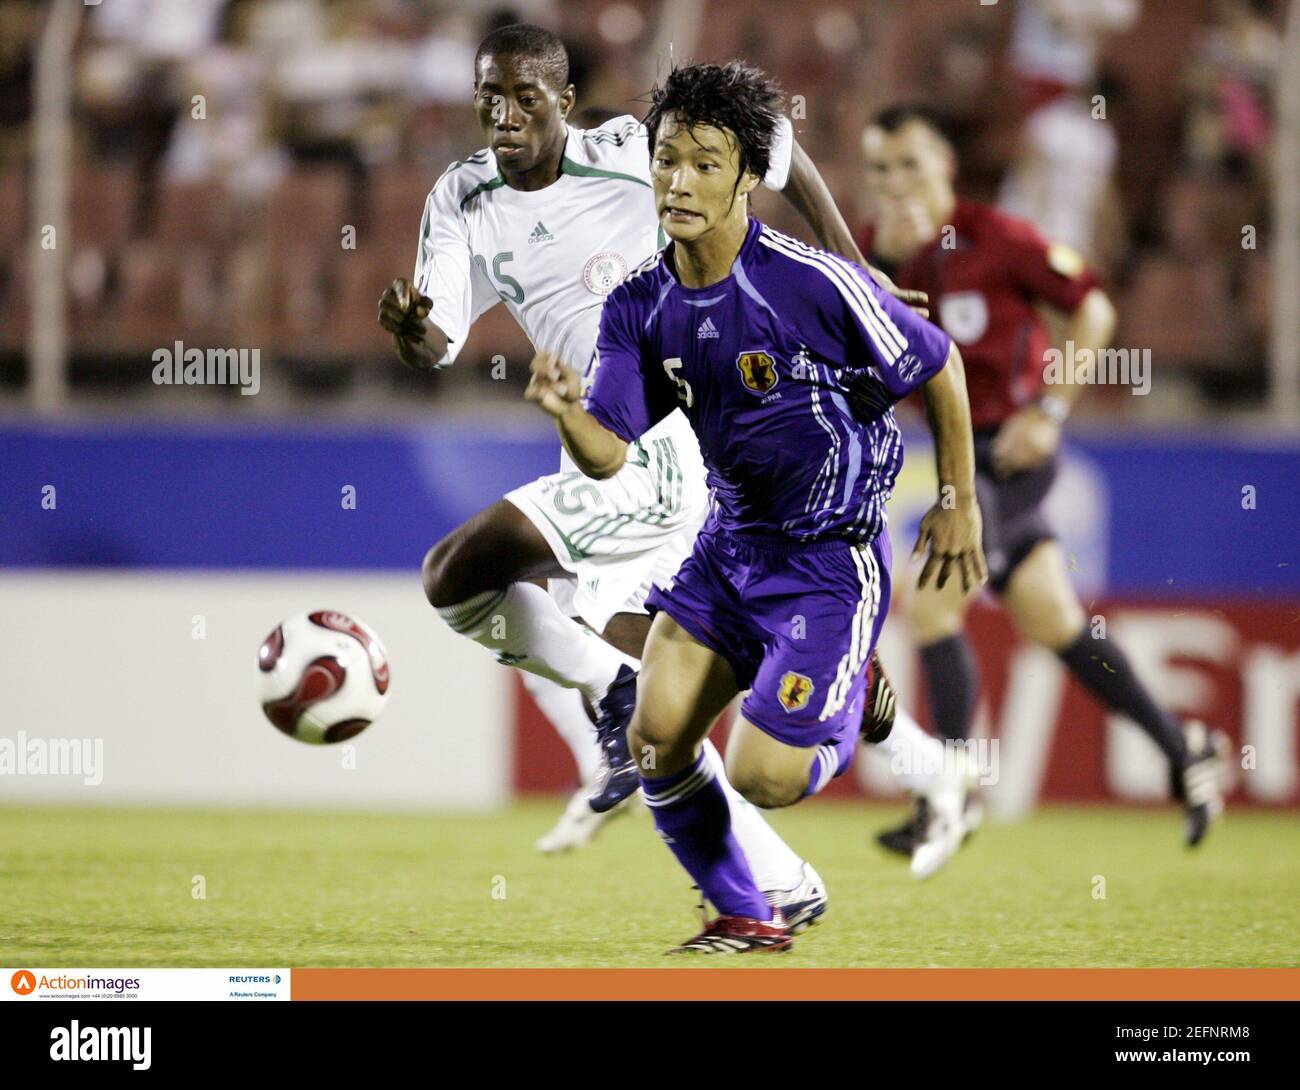 Calcio - Giappone contro Nigeria FIFA Under 17 Campionato Mondiale Corea  2007 Gruppo D - Stadio Gwang-Yang, Gwangyang, Corea del Sud - 22/8/07  Nigeria's Sheriff Isa (L) e Giappone's Shunki Takahashi Mandatory